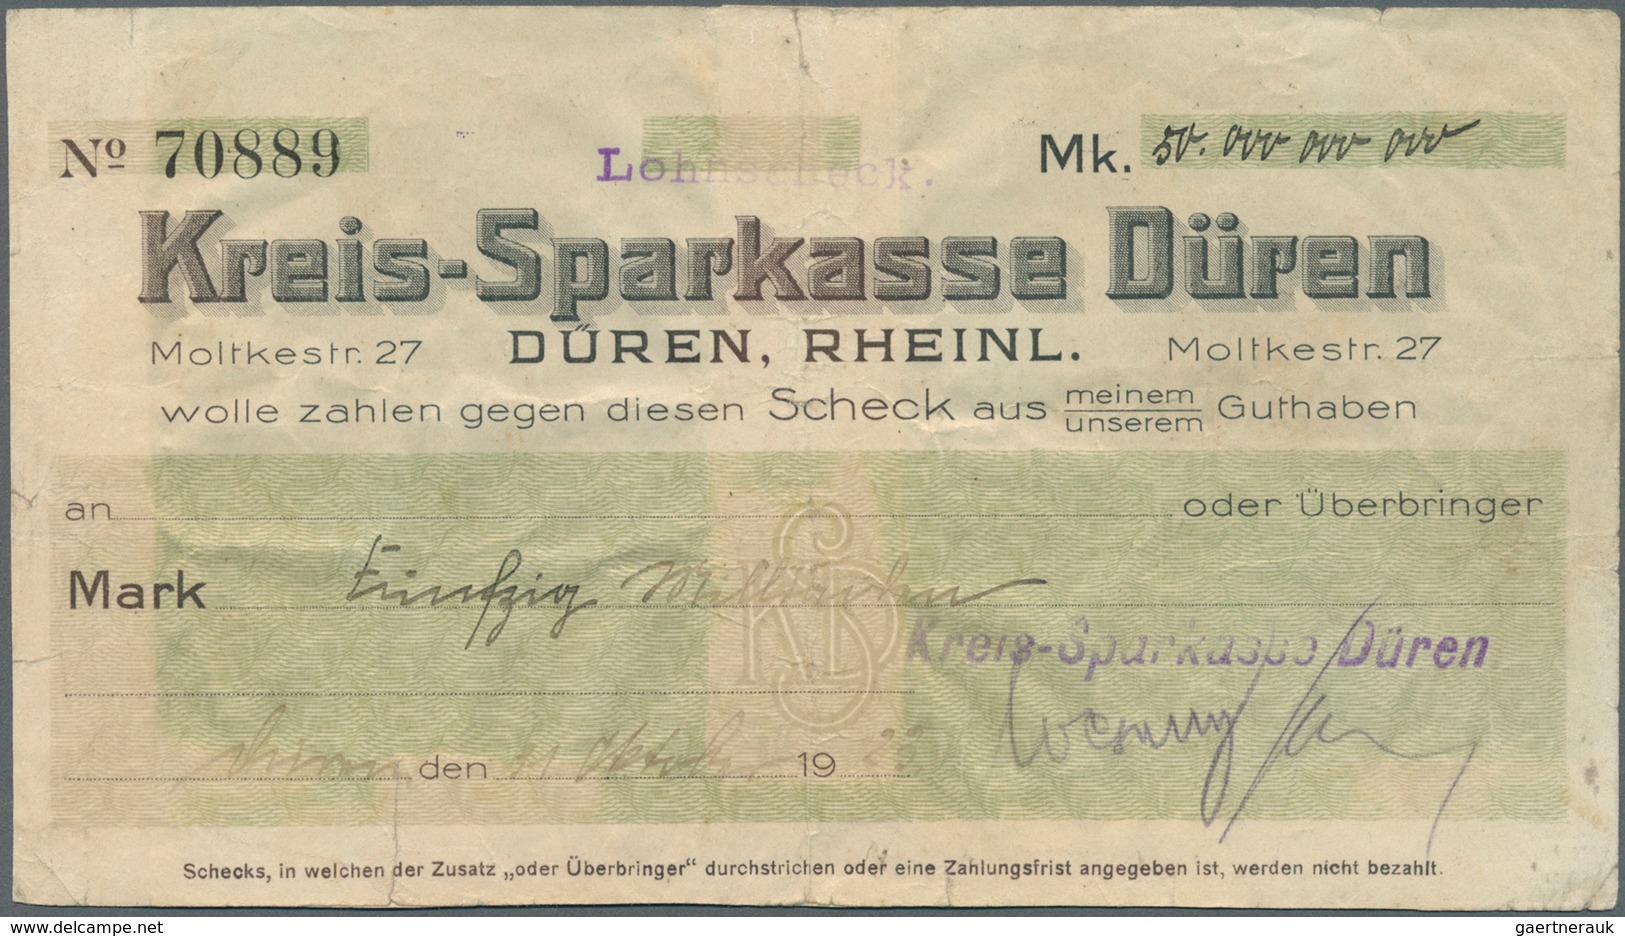 Deutschland - Notgeld - Rheinland: Düren, Kreissparkasse, 50 Mrd. Mark, 31.10.1923, Eigenscheck, Wer - [11] Emissions Locales